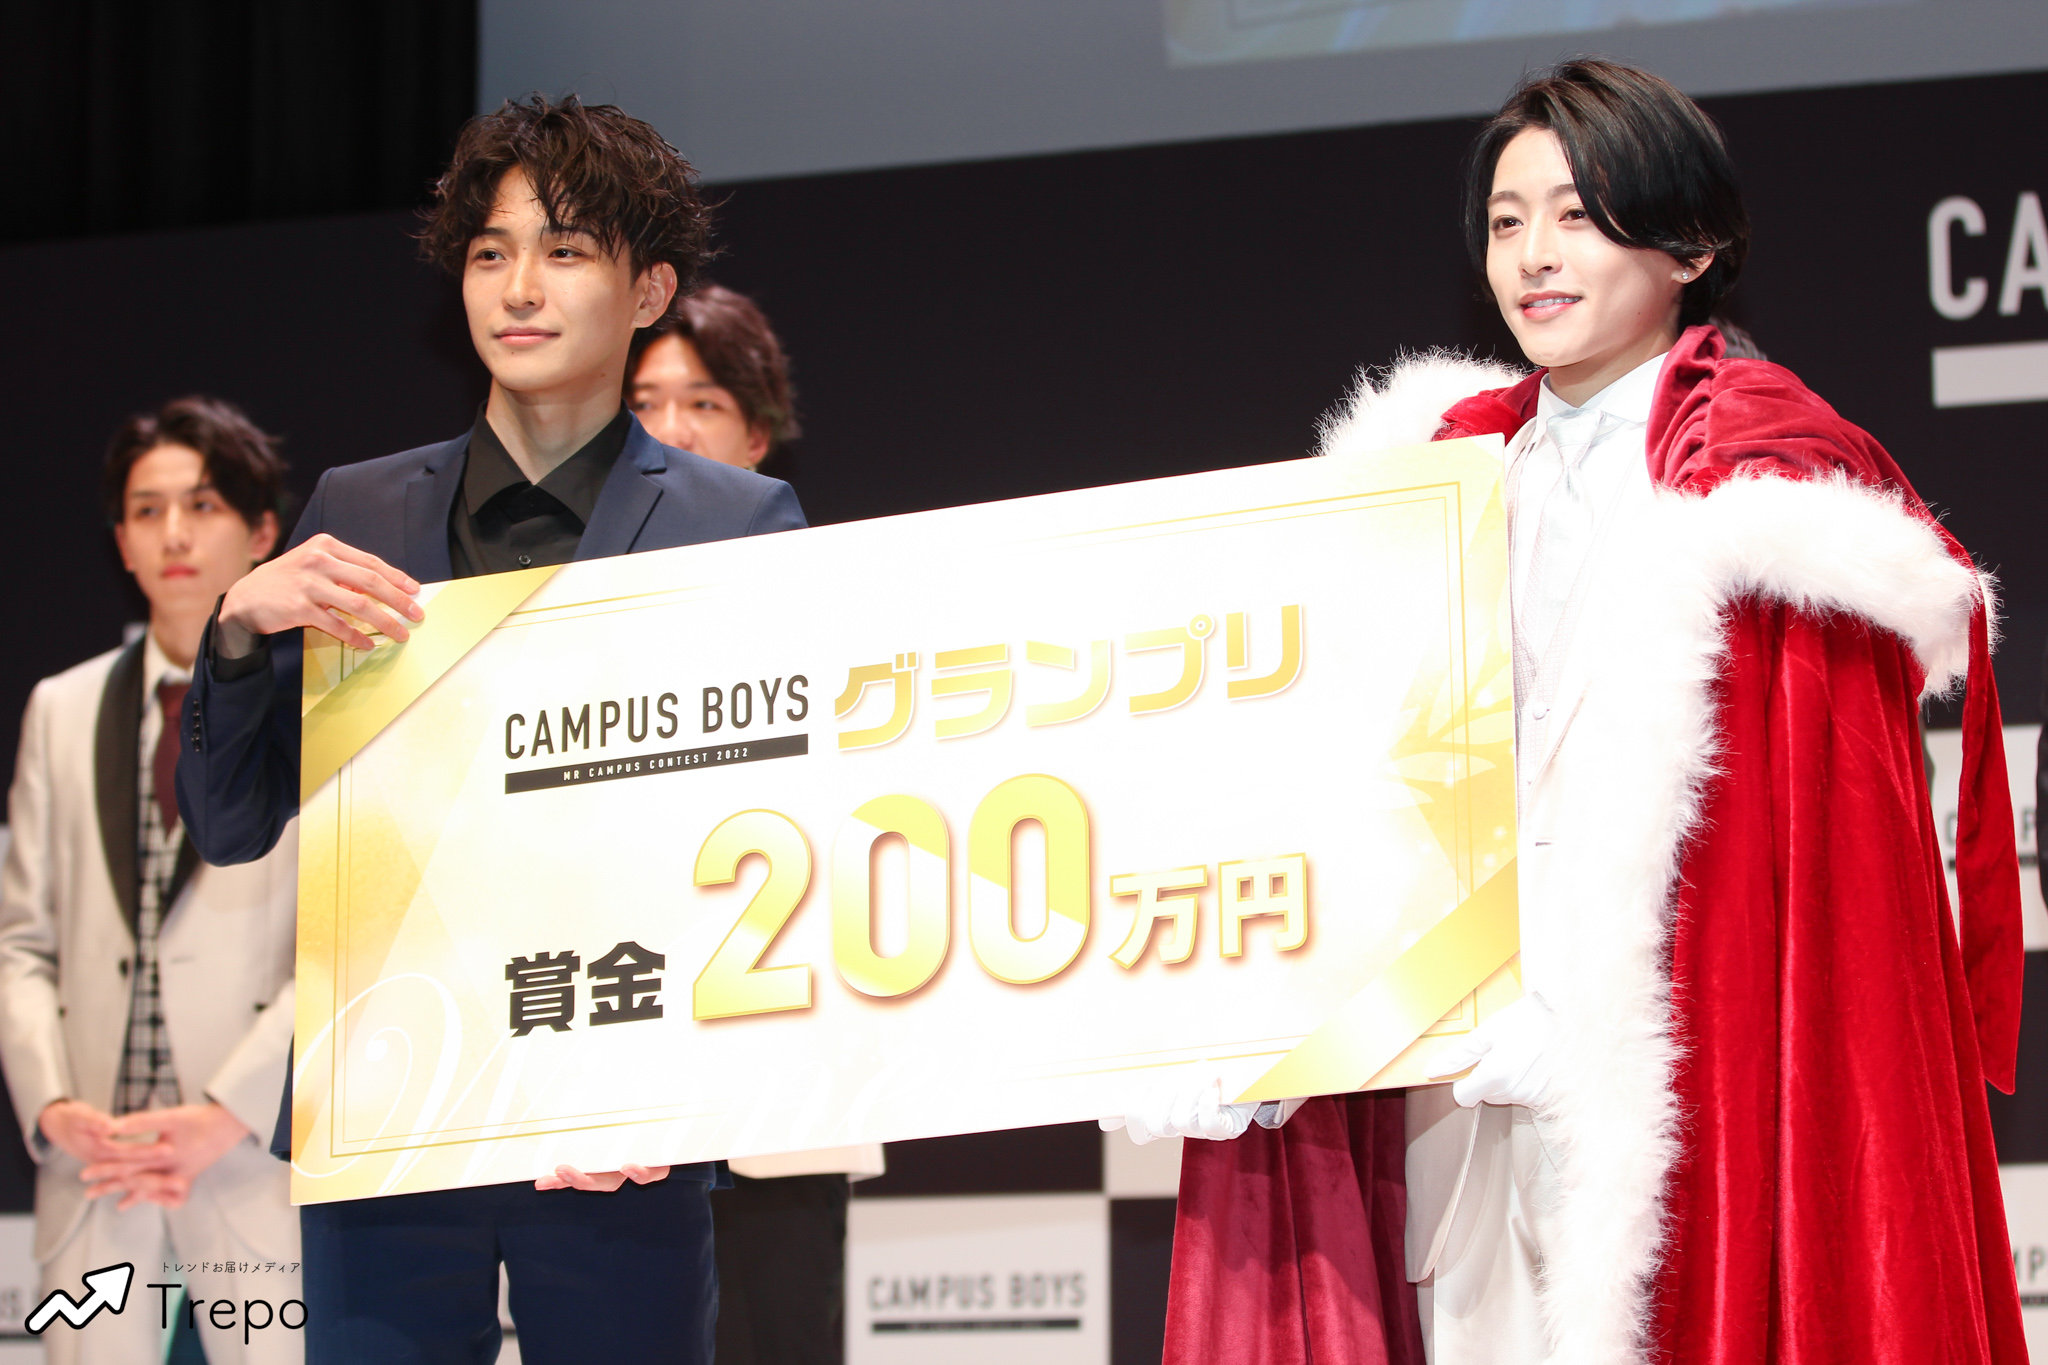 キャンパスボーイズ
CAMPUS BOYS 2022
ミスターコンテスト
荒井啓志
山本健登